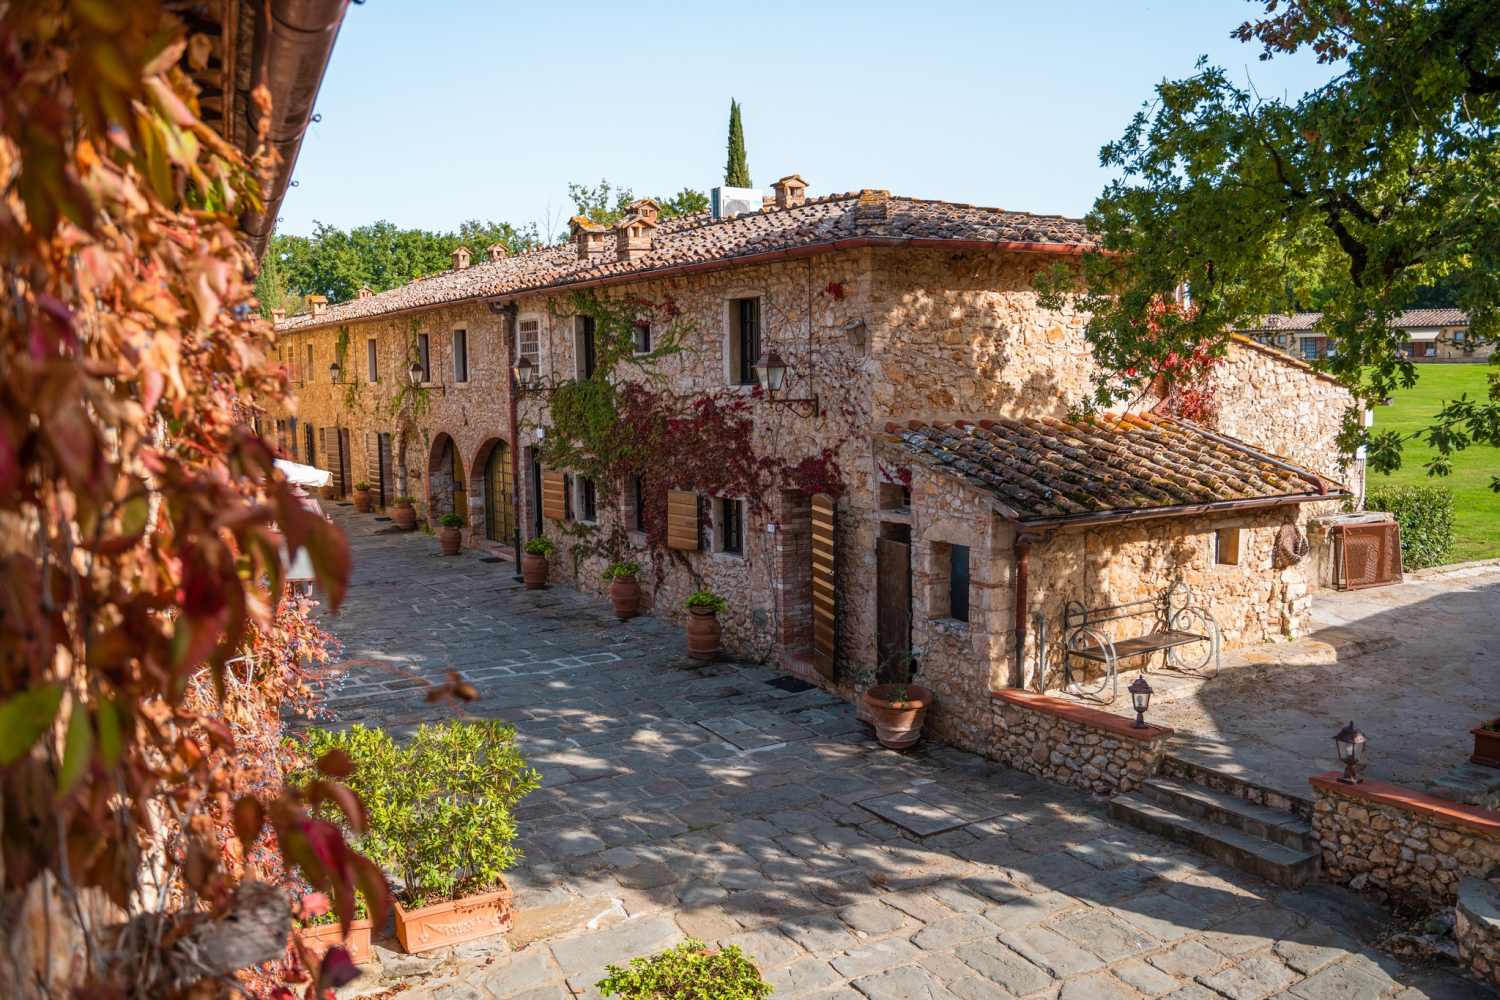 Borgo San Luigi Chianti, Tuscany - Italy